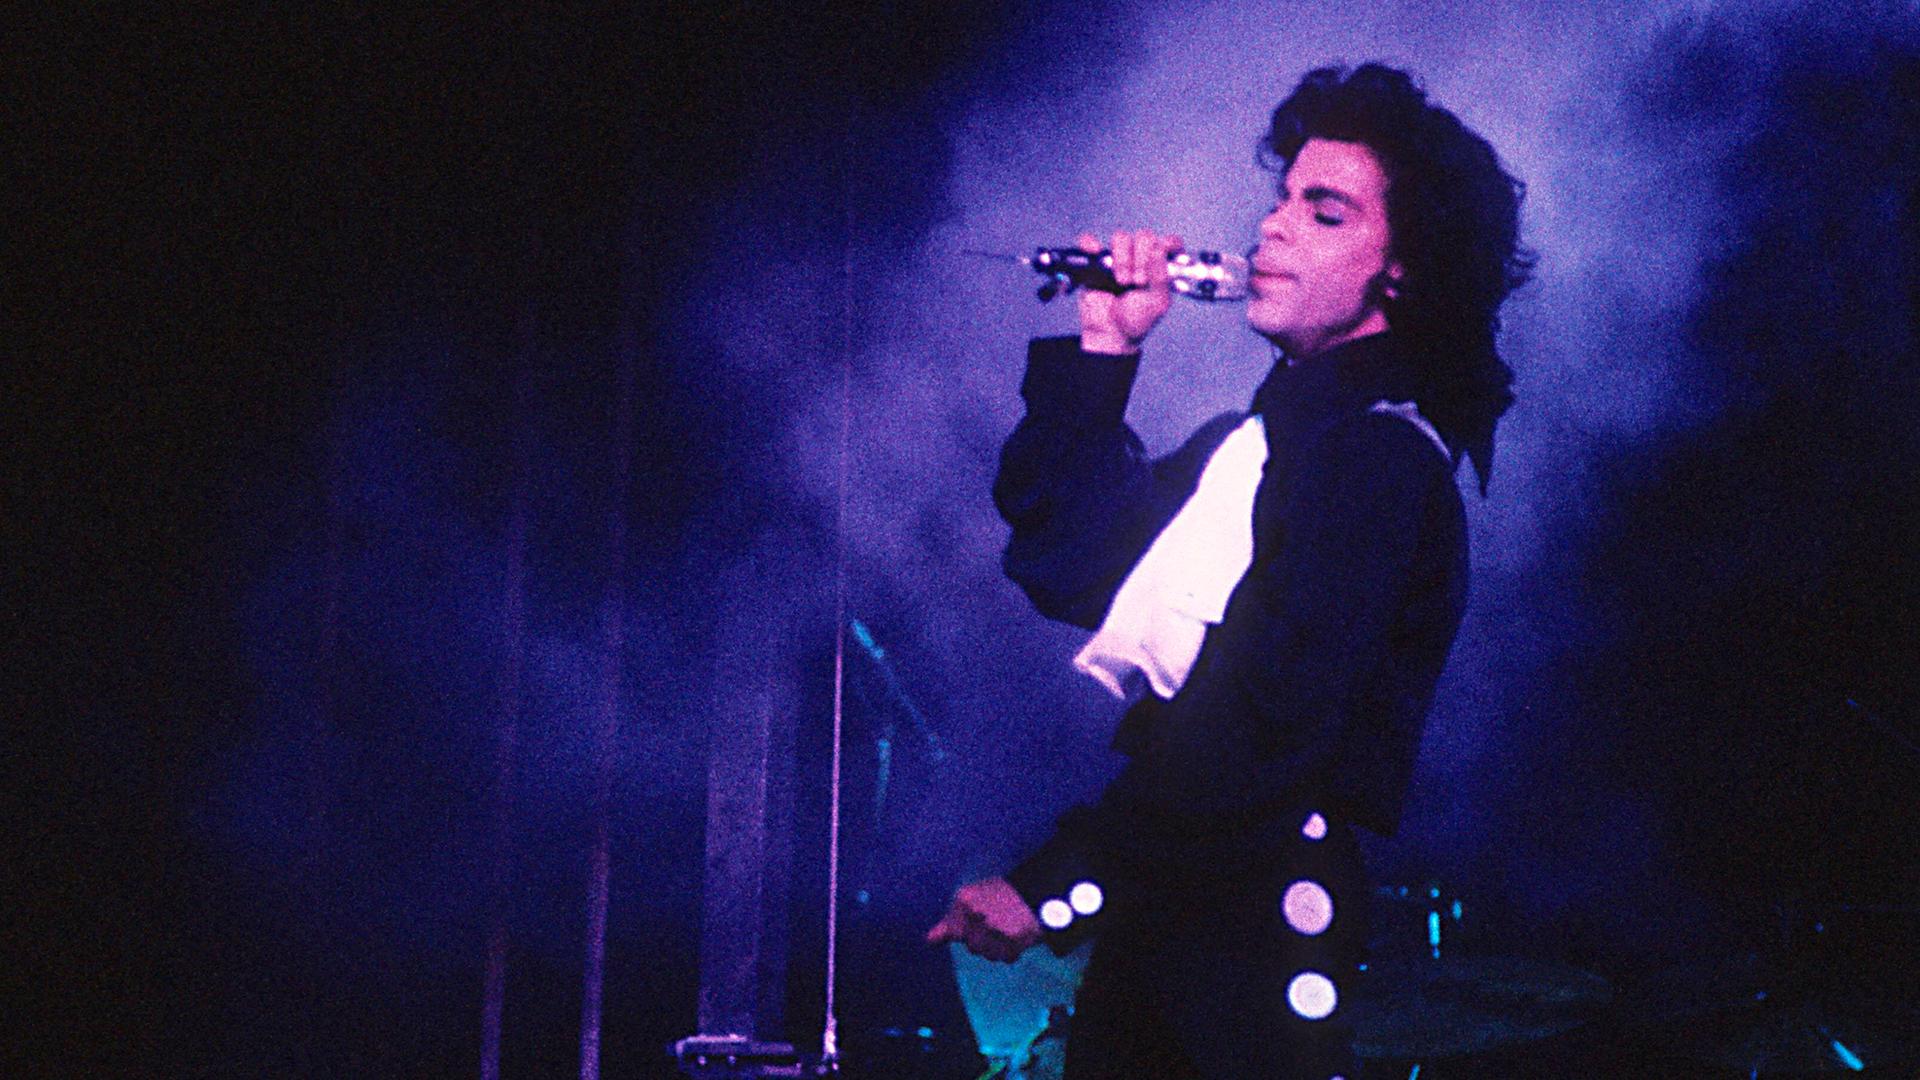 Prince singt auf der Bühne in purpurem Licht.